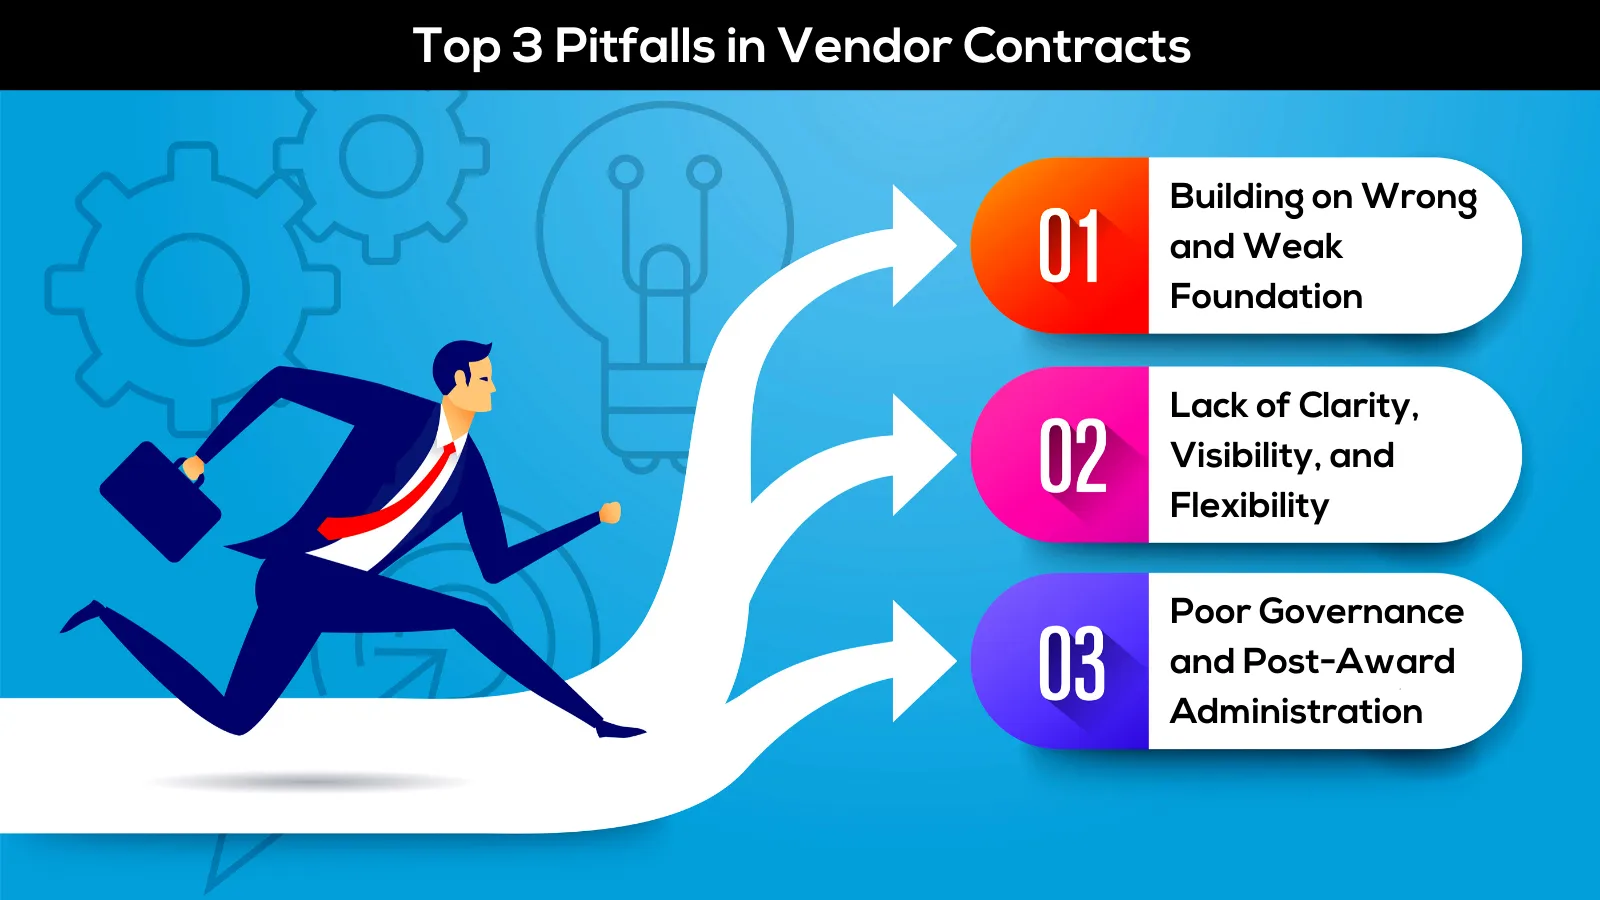 G4B_Top 3 Pitfalls in Vendor Contracts.